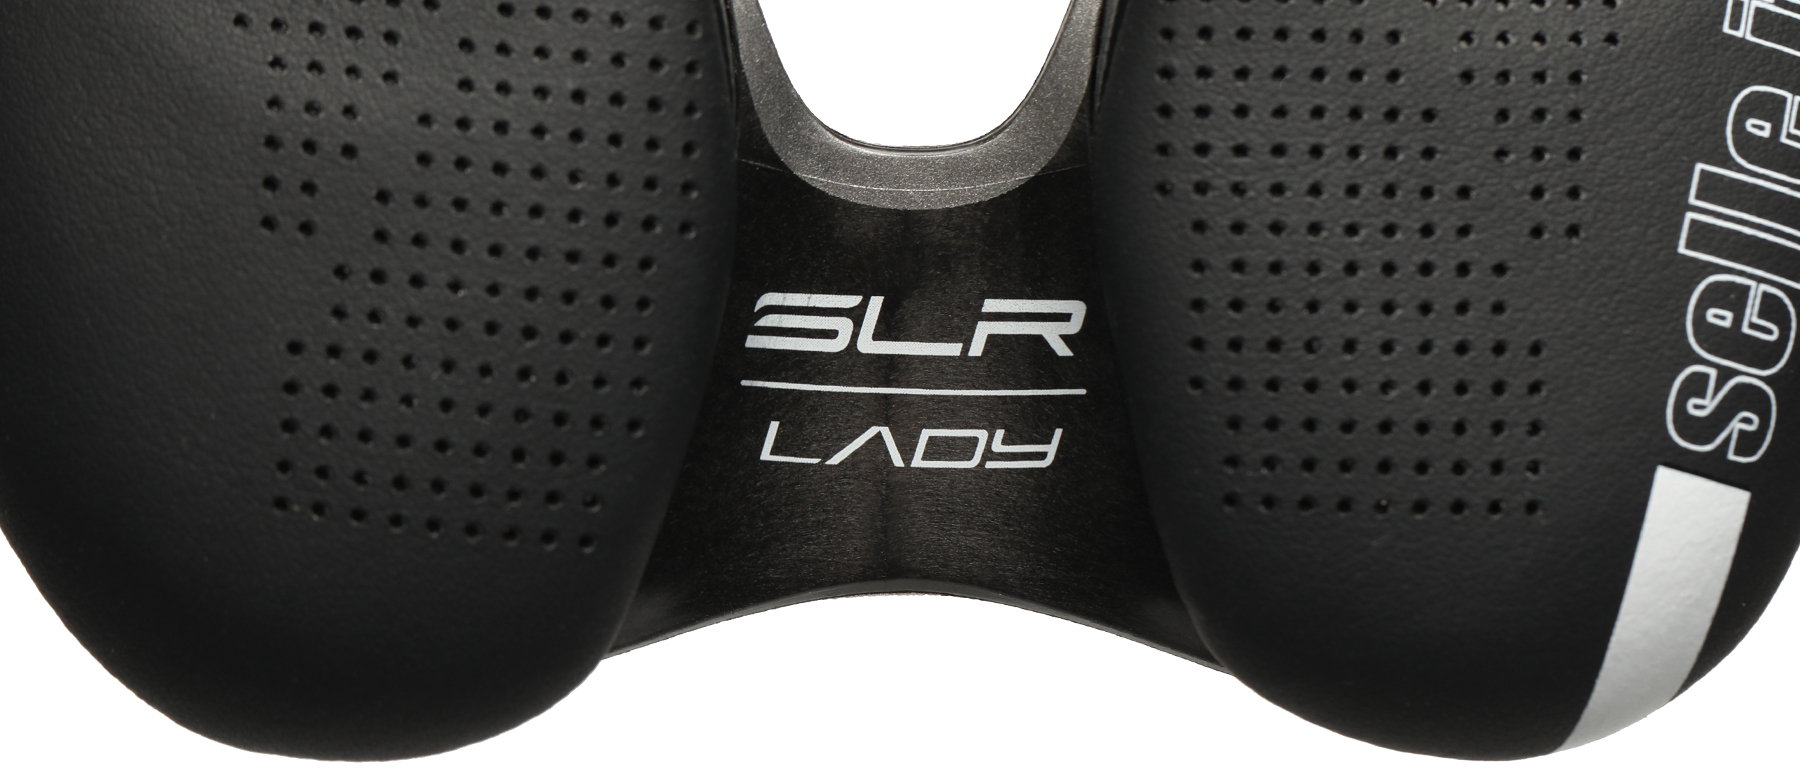 Selle Italia SLR Boost Lady TI 316  Superflow Saddle